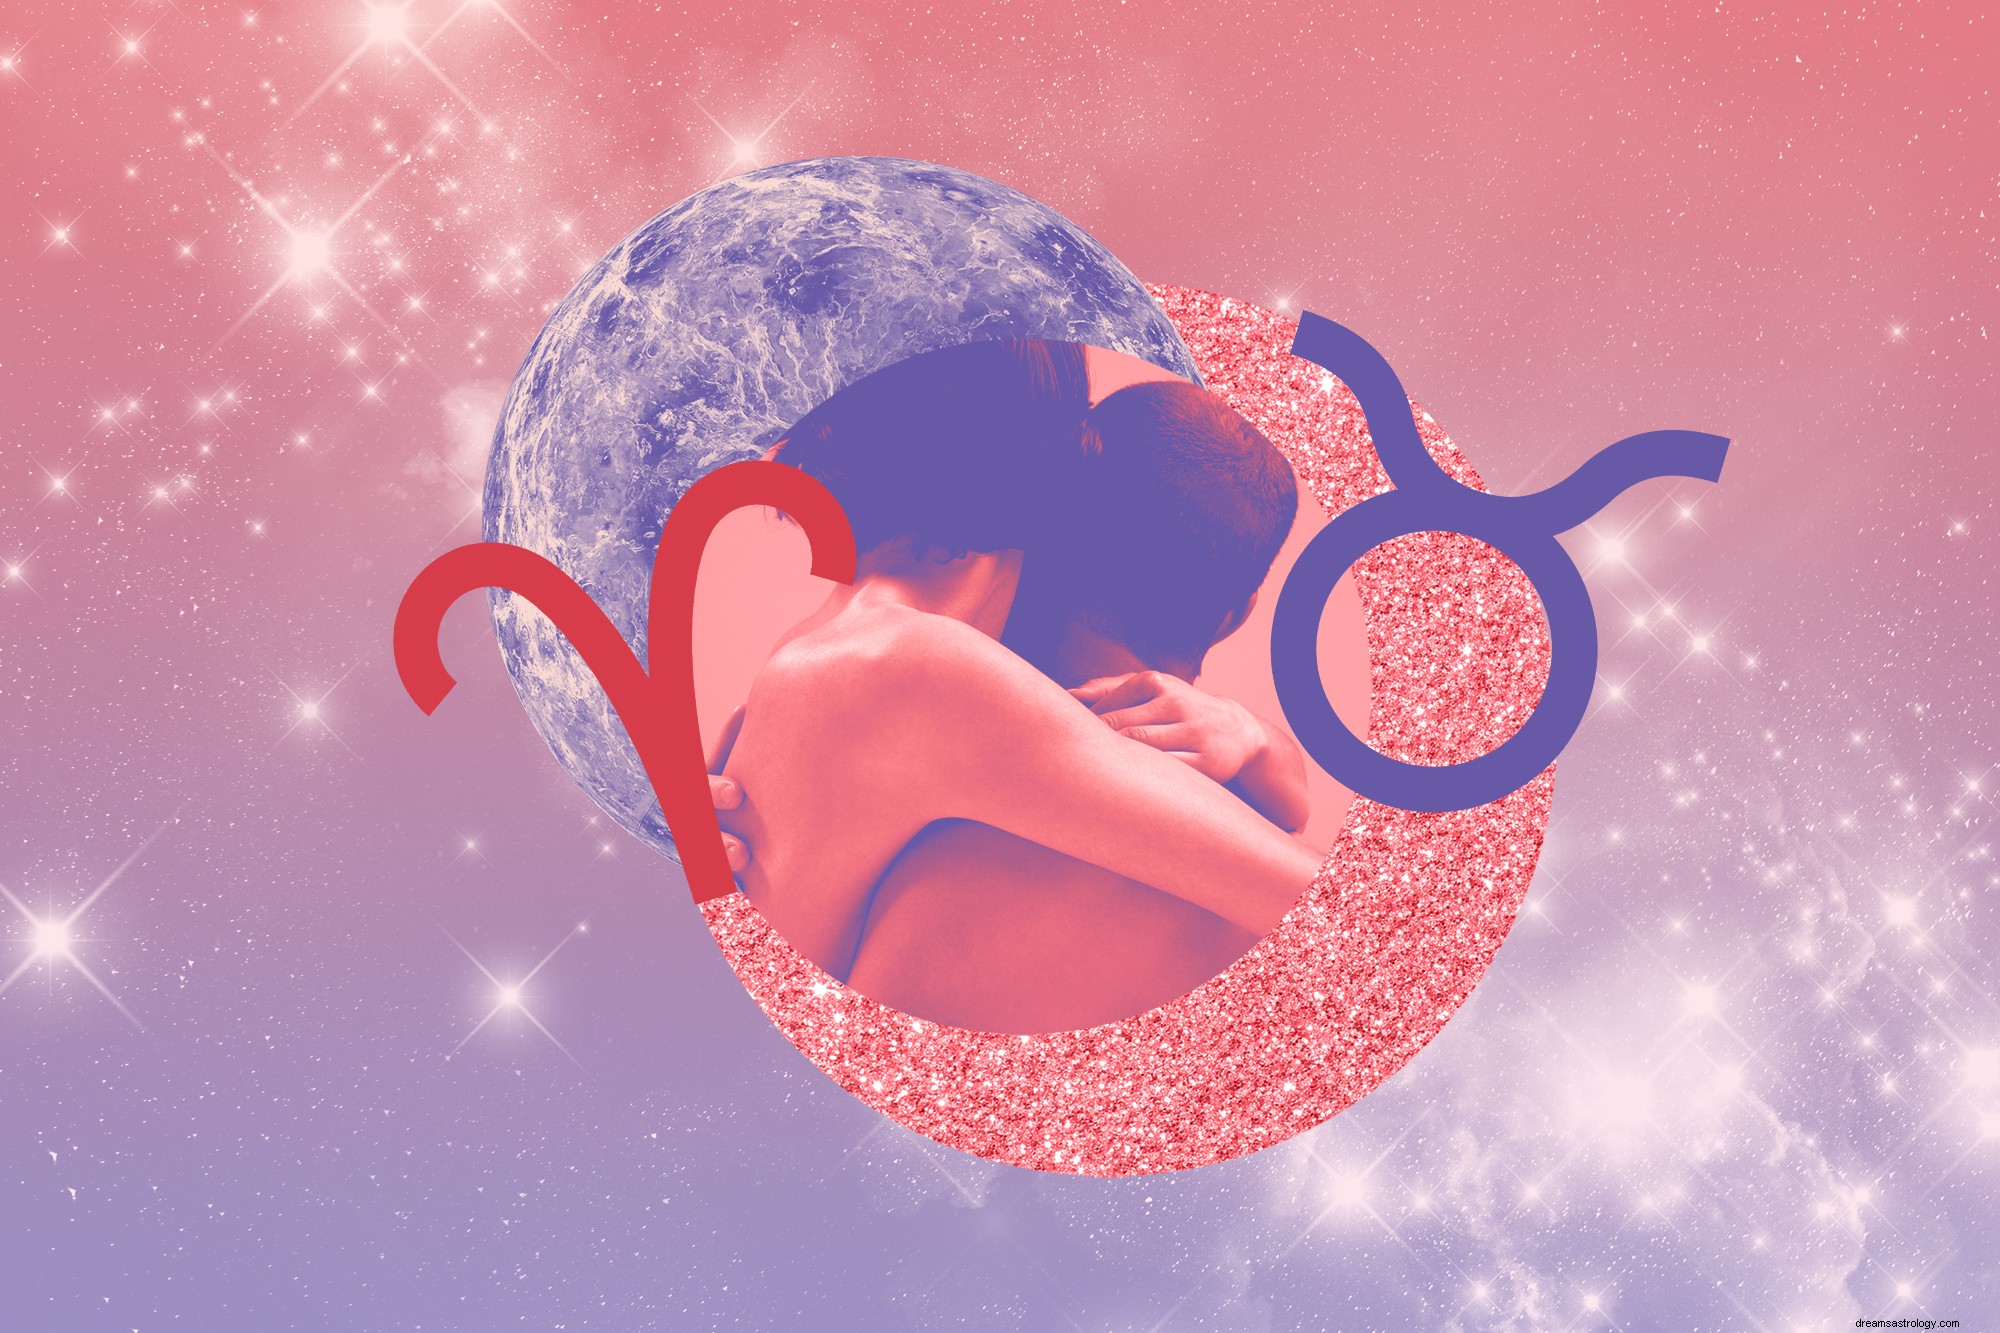 Το ωροσκόπιο για το σεξ και την αγάπη για τον Απρίλιο του 2021 